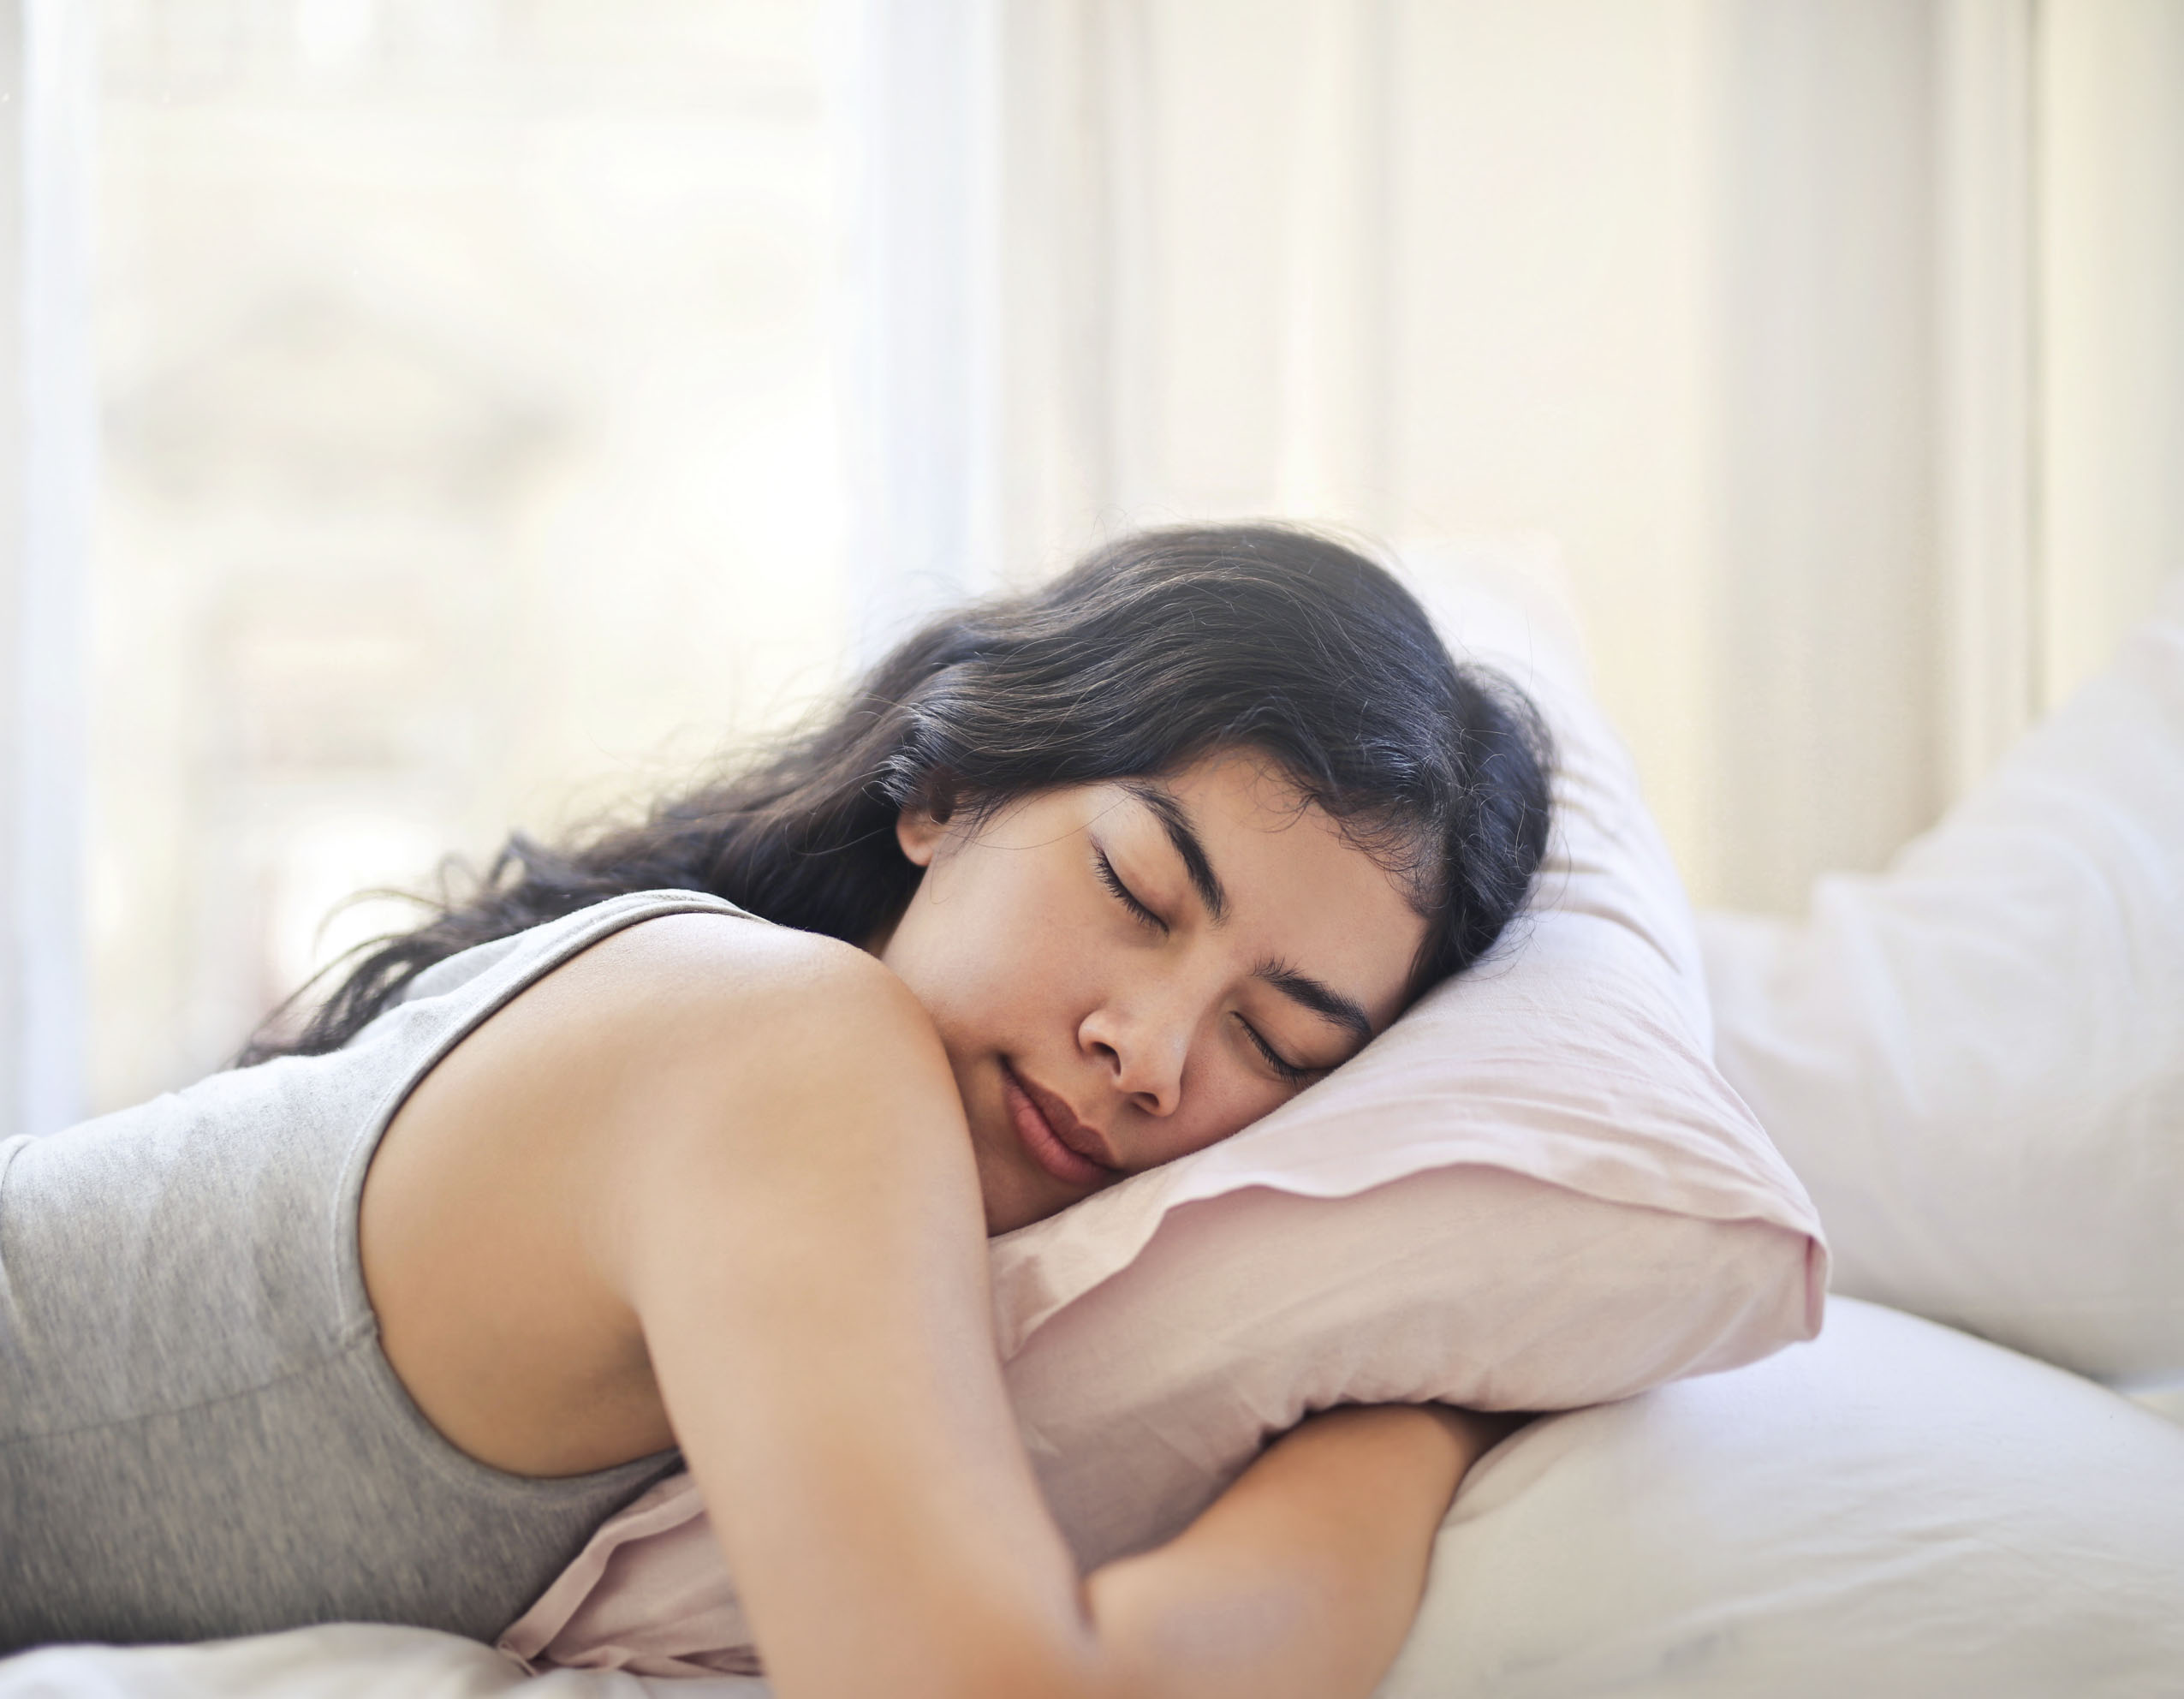 Dormir bien es parte de una rutina saludable